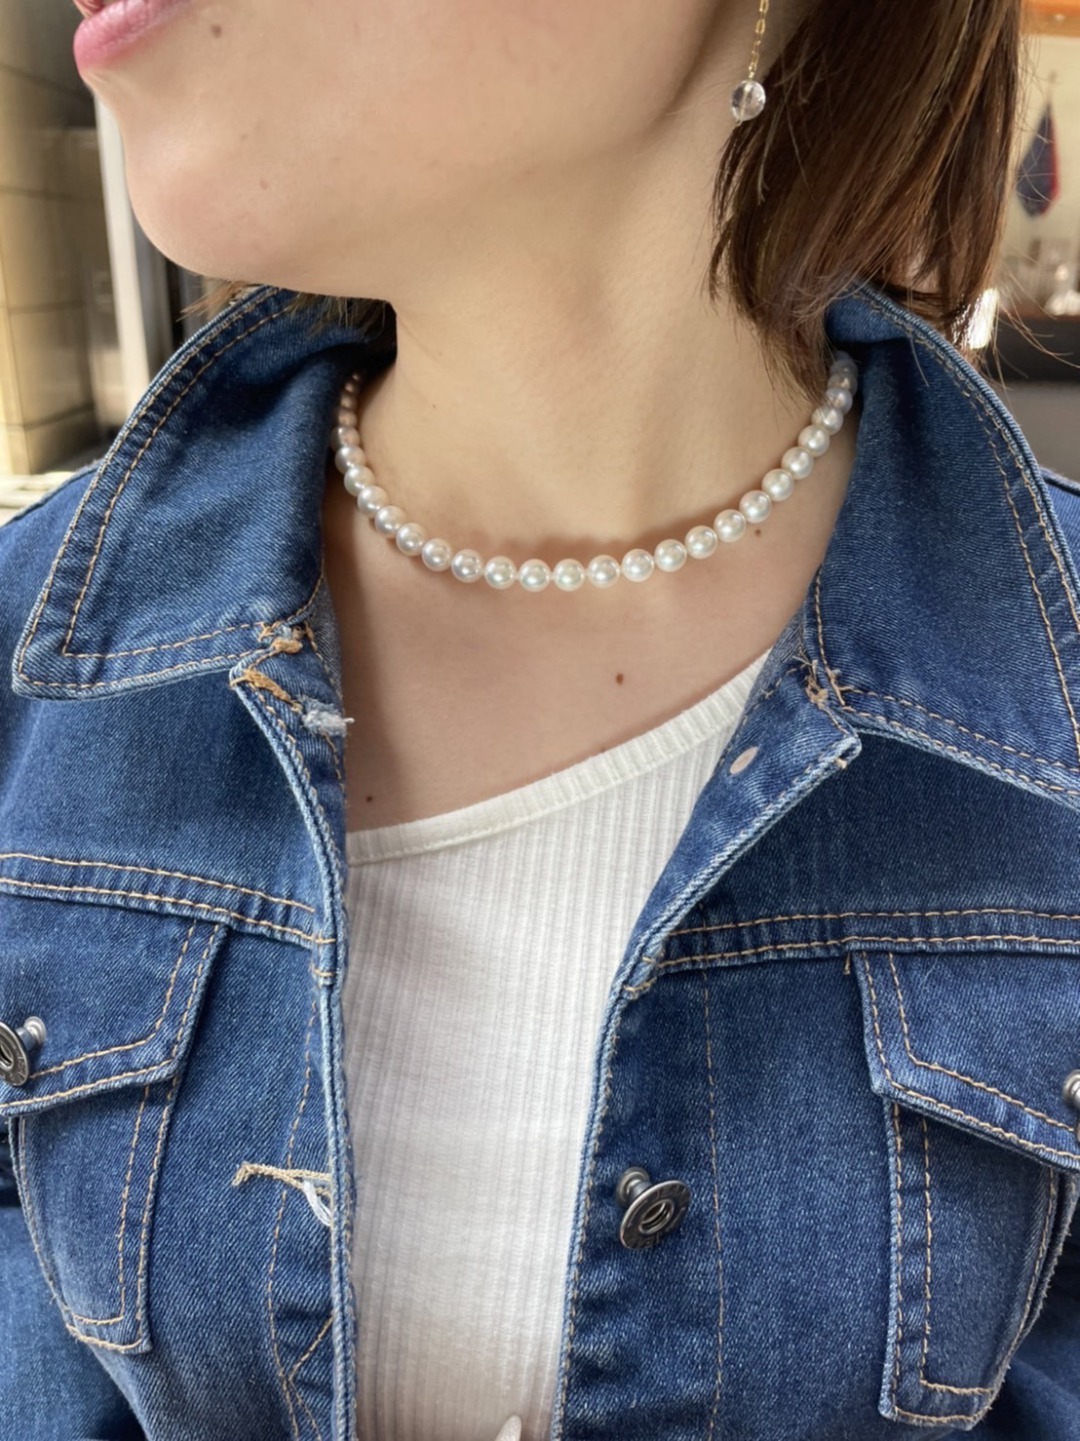 美しい真珠のネックレスのオススメは無調色真珠